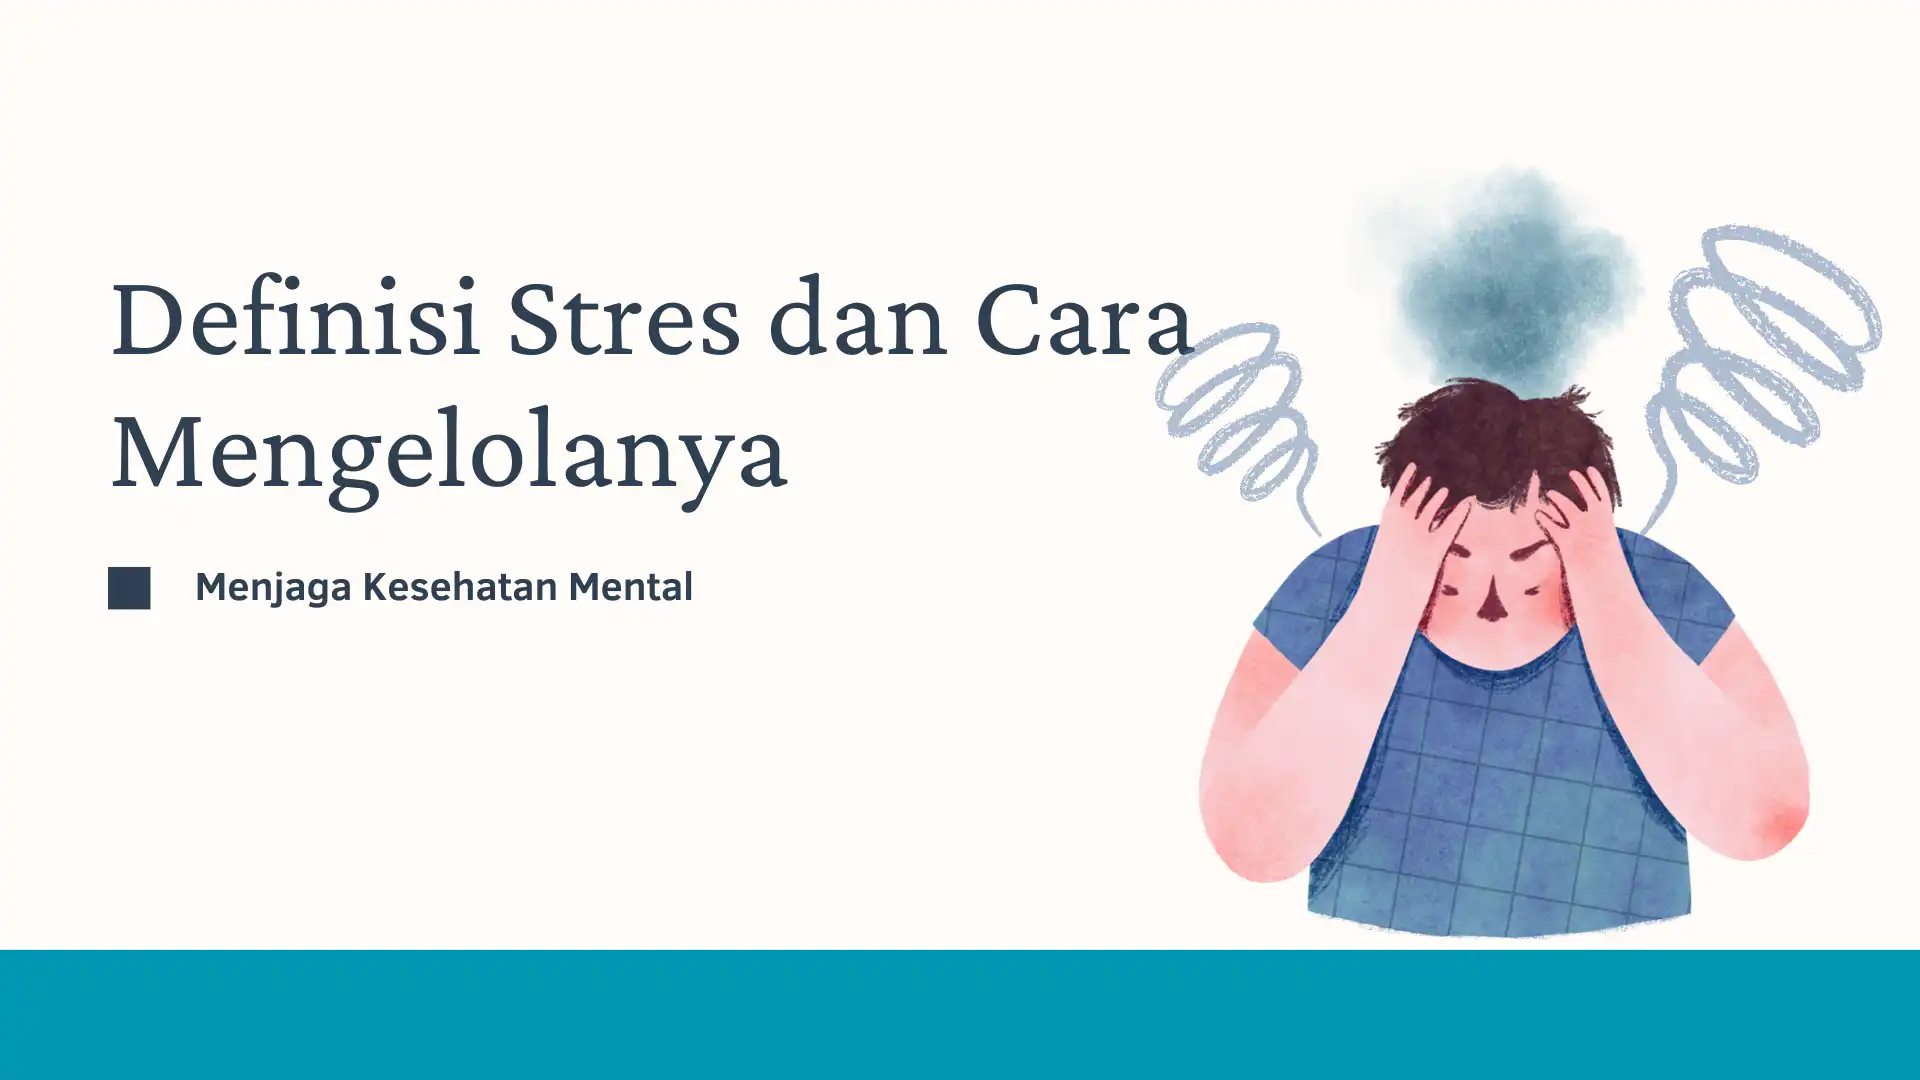 Stres dan Cara Mengelolanya